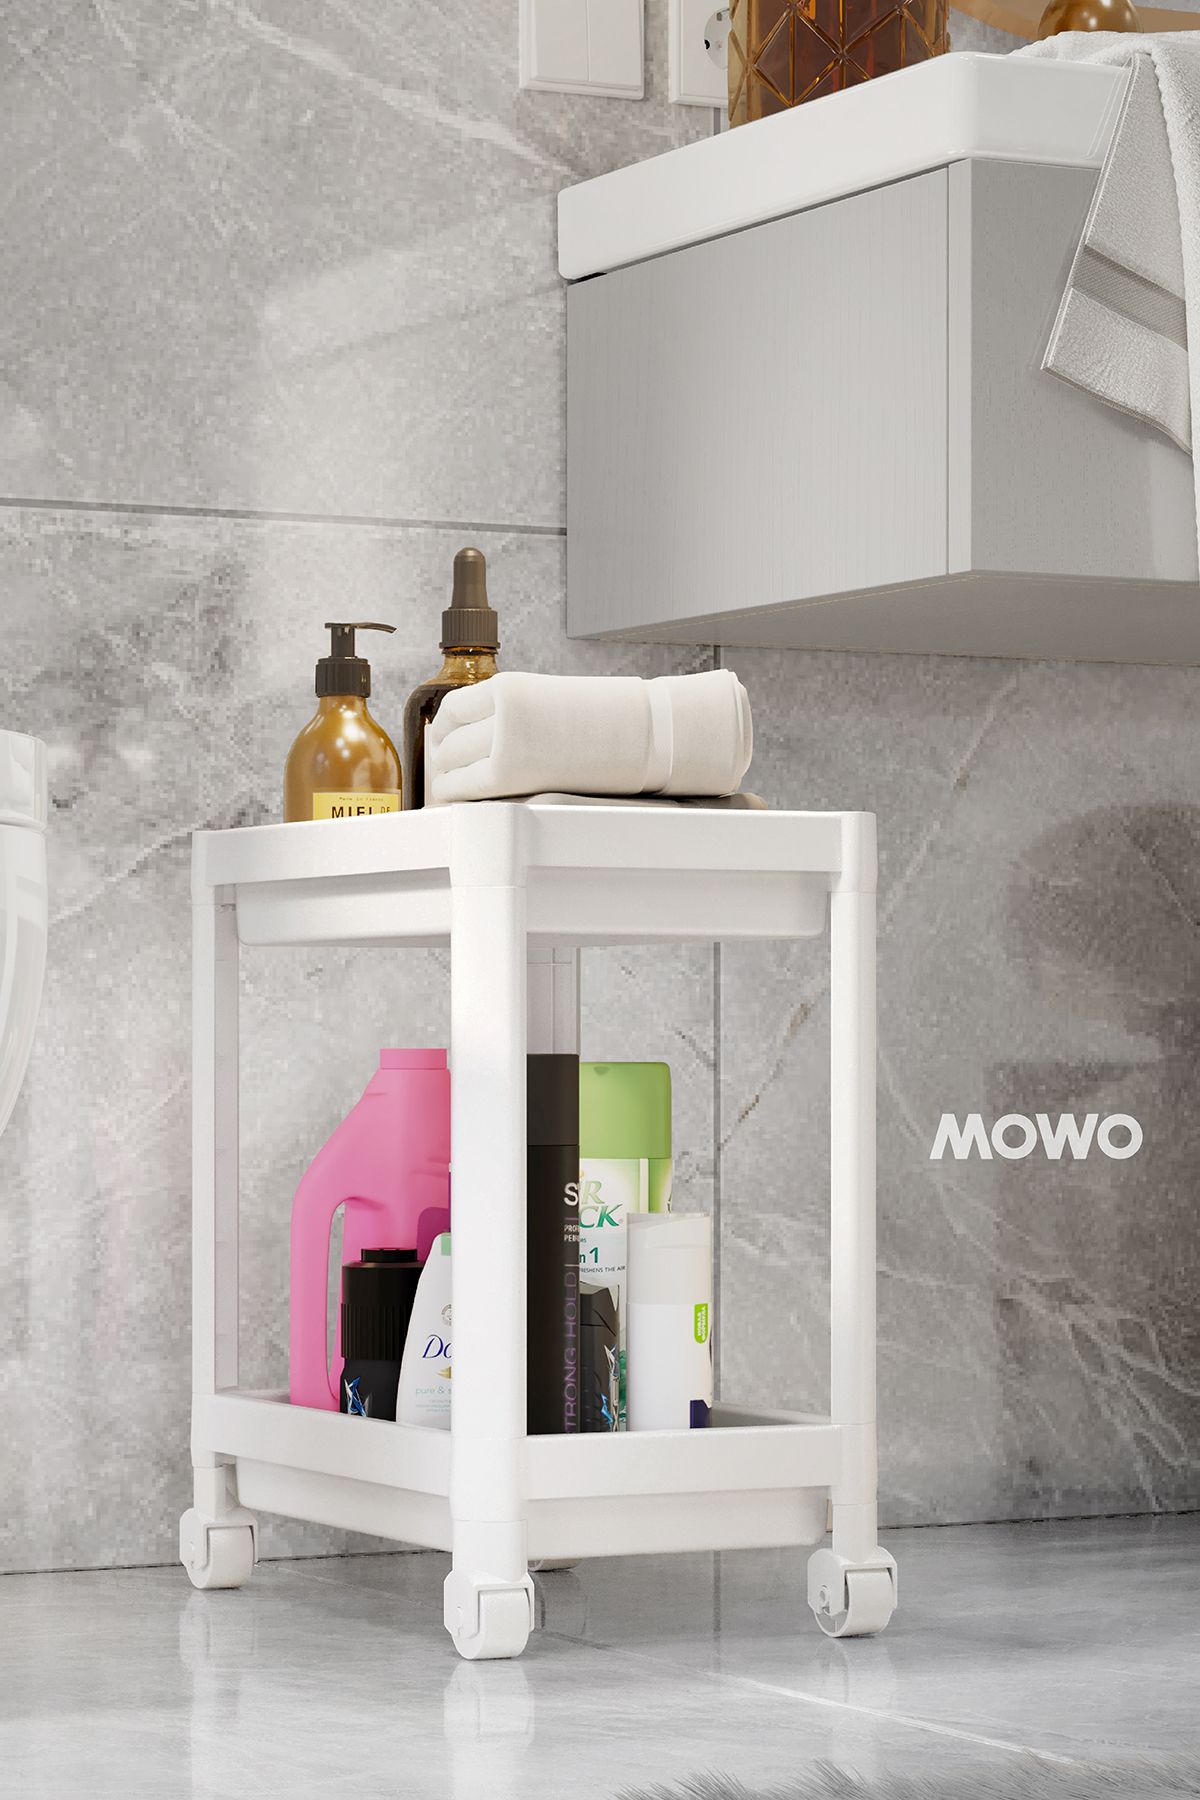 Mowo Home 2 Katlı Tekerlekli Düzenleyici Raf Beyaz, Banyo Dolabı, Mutfak Tezgah ve Evye Altı, Deterjanlık